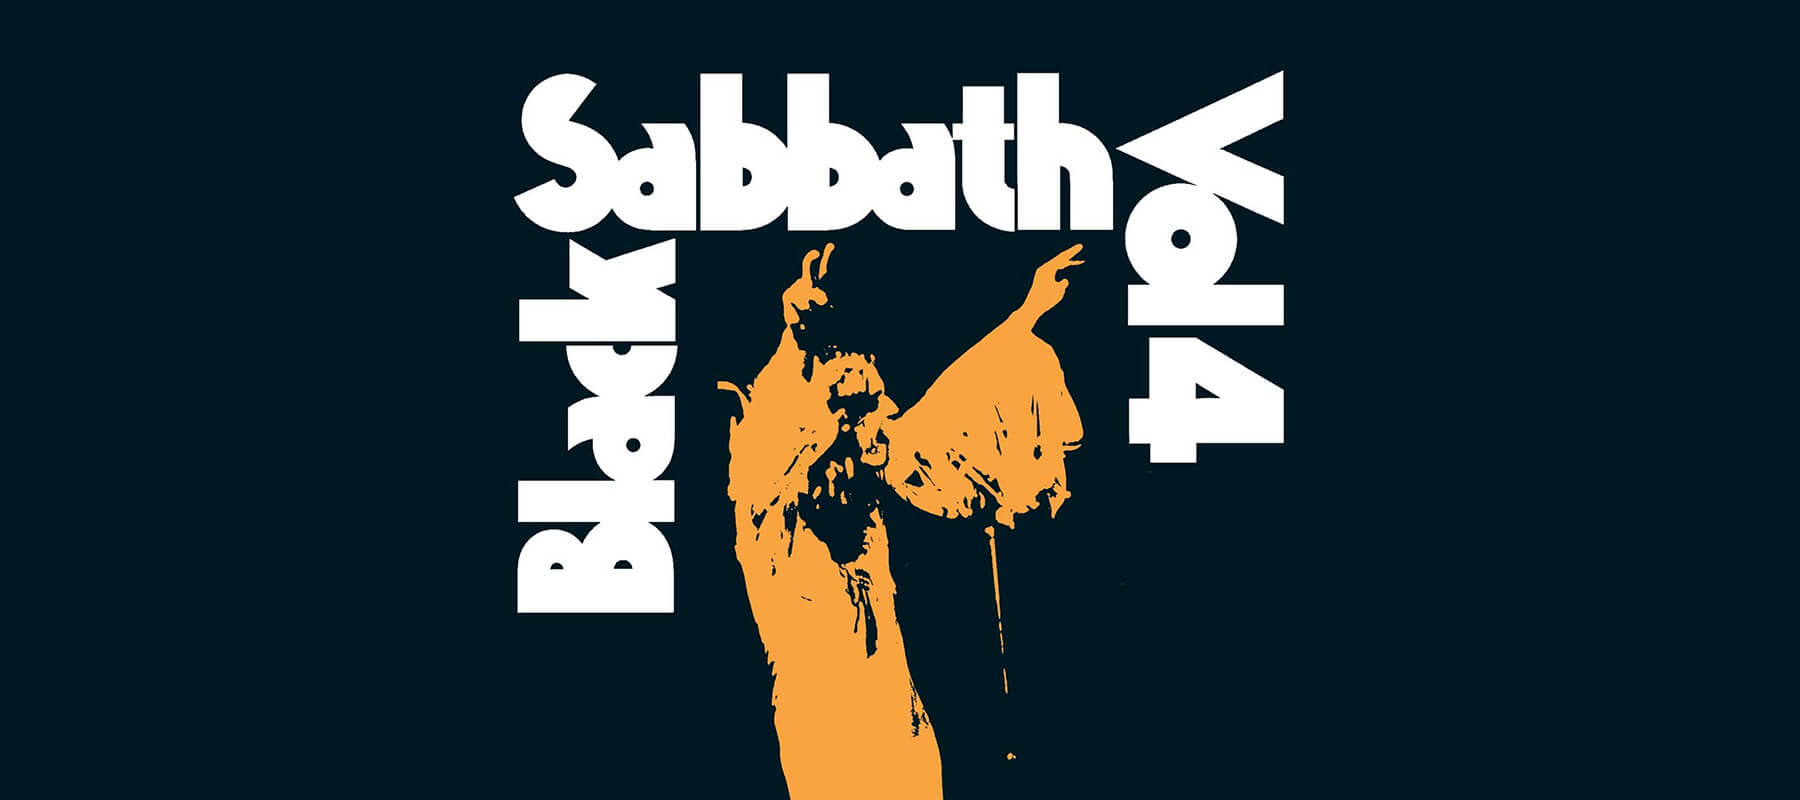 Tony Iommi Black Sabbath Vol 4 Guitar Gear Blog 1800x800px | Boost Guitar Pedals